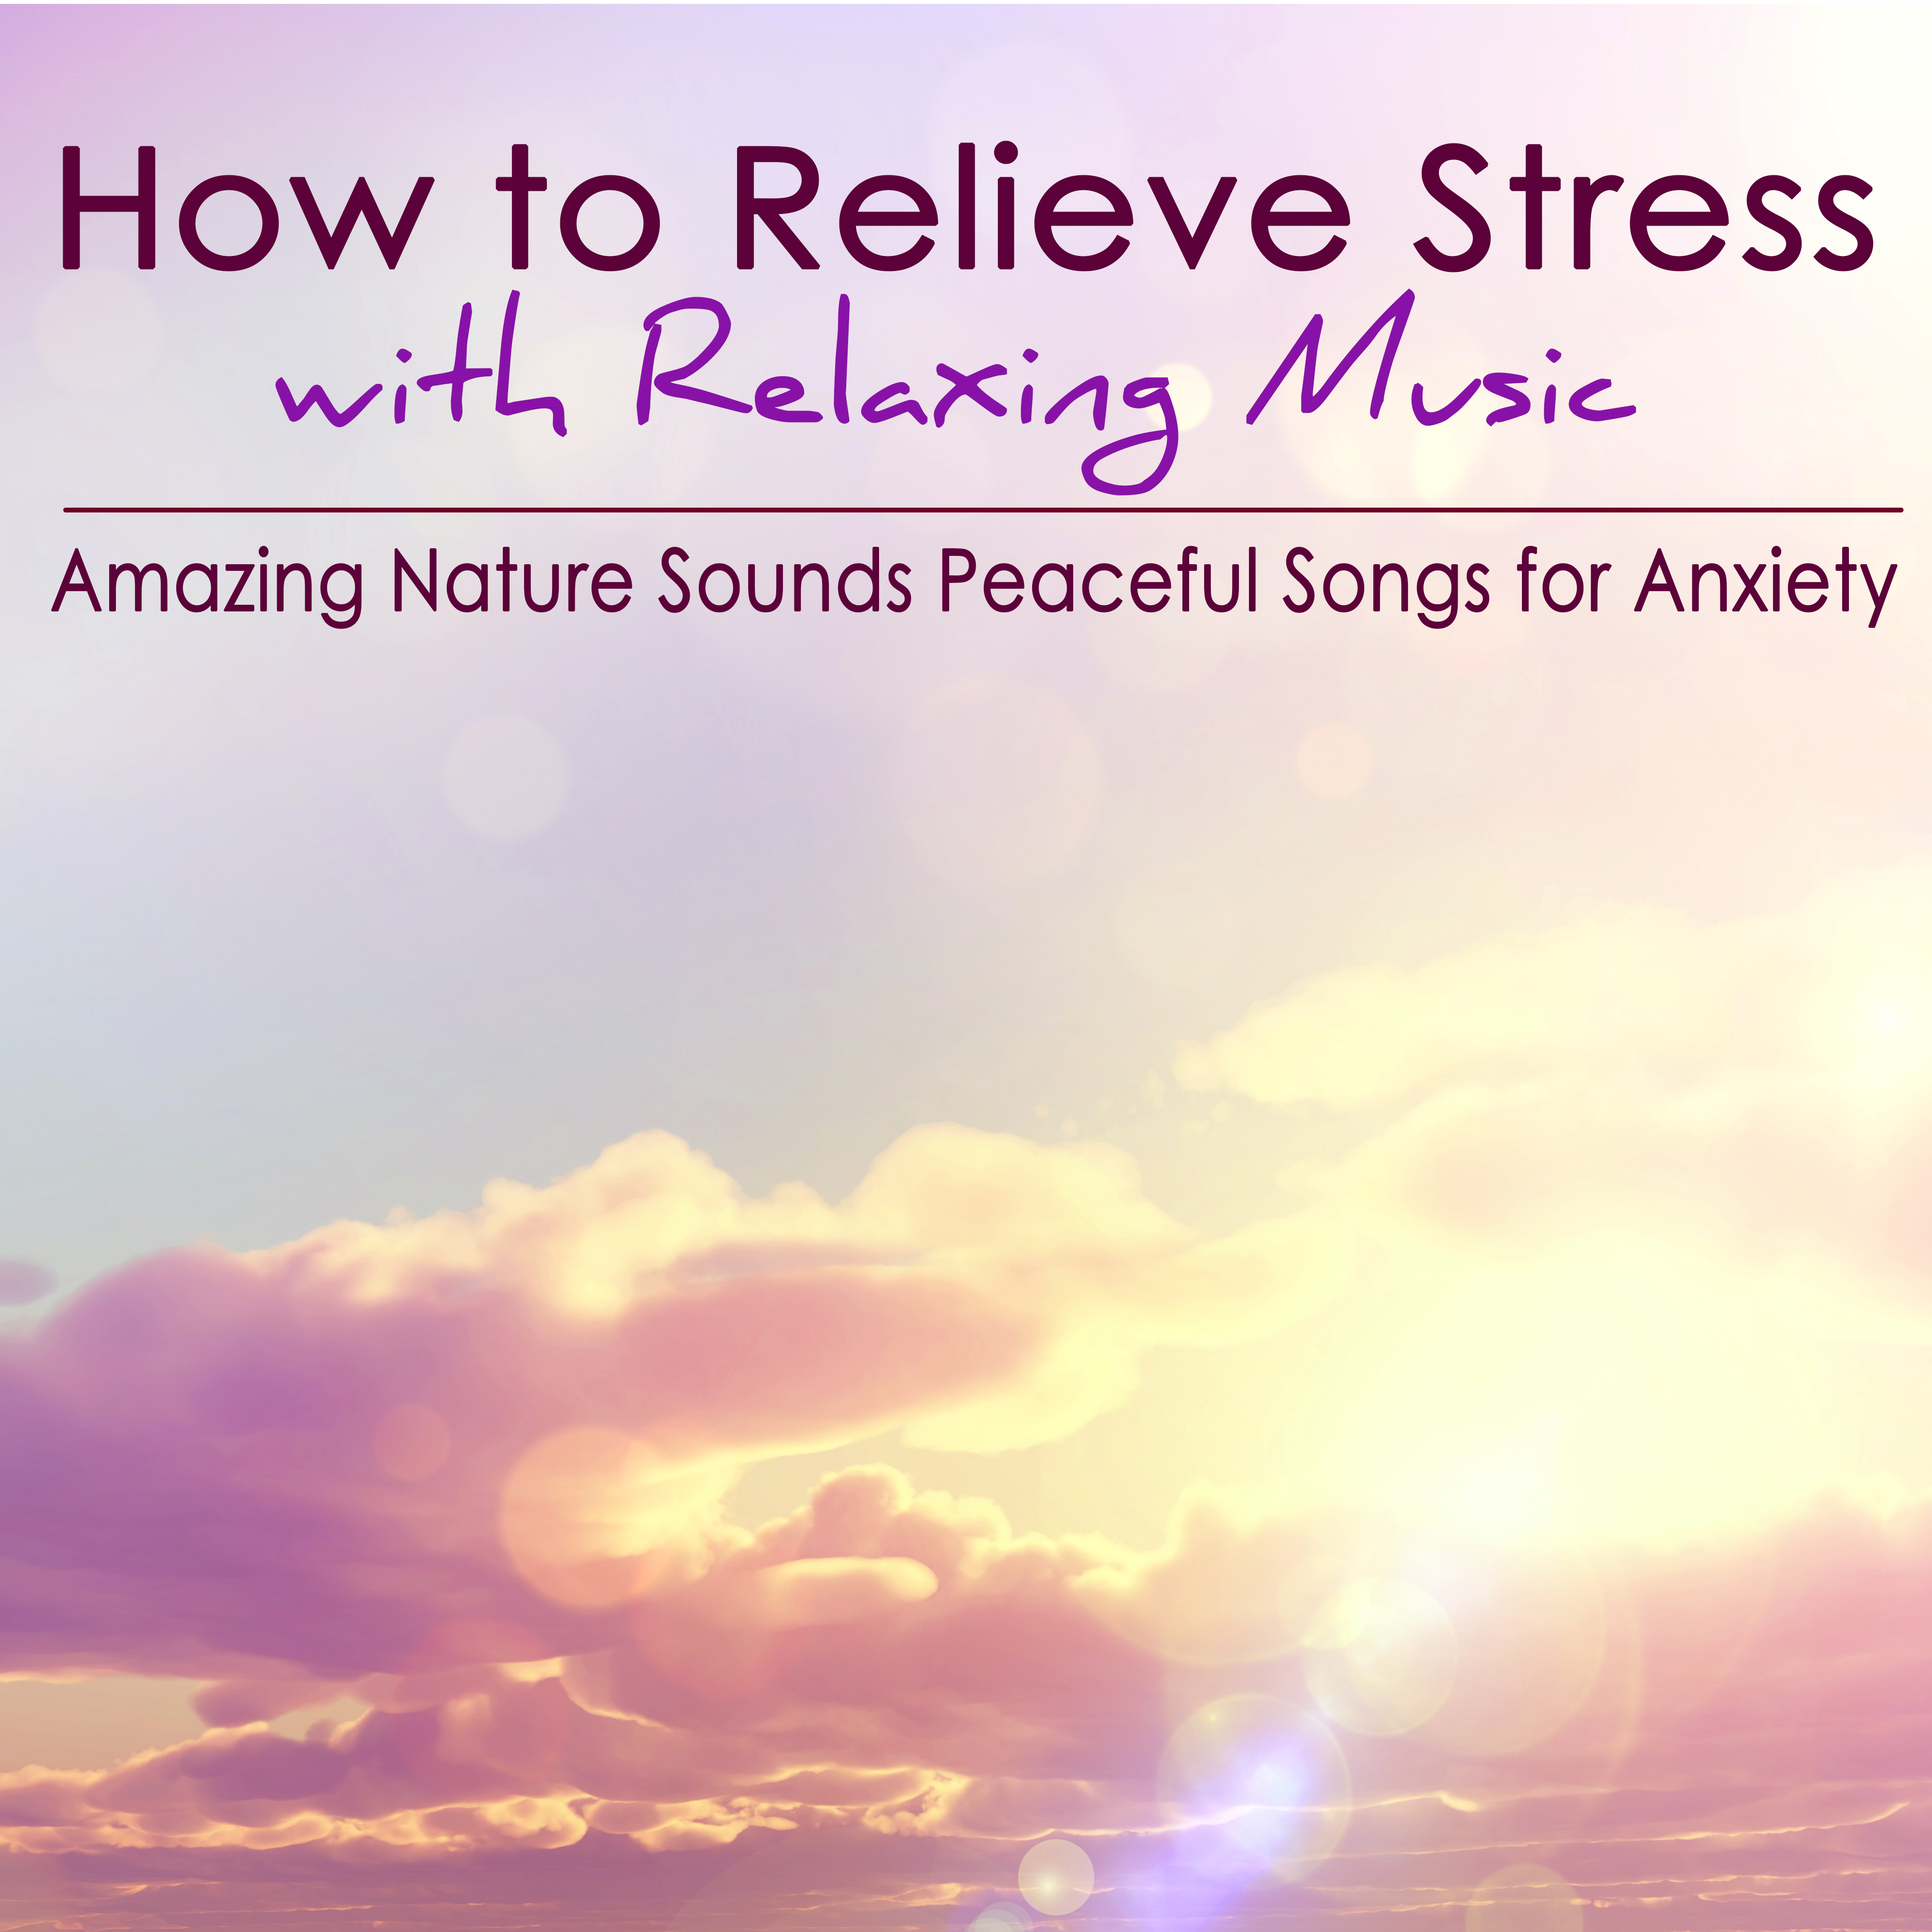 Ways to Relieve Stress